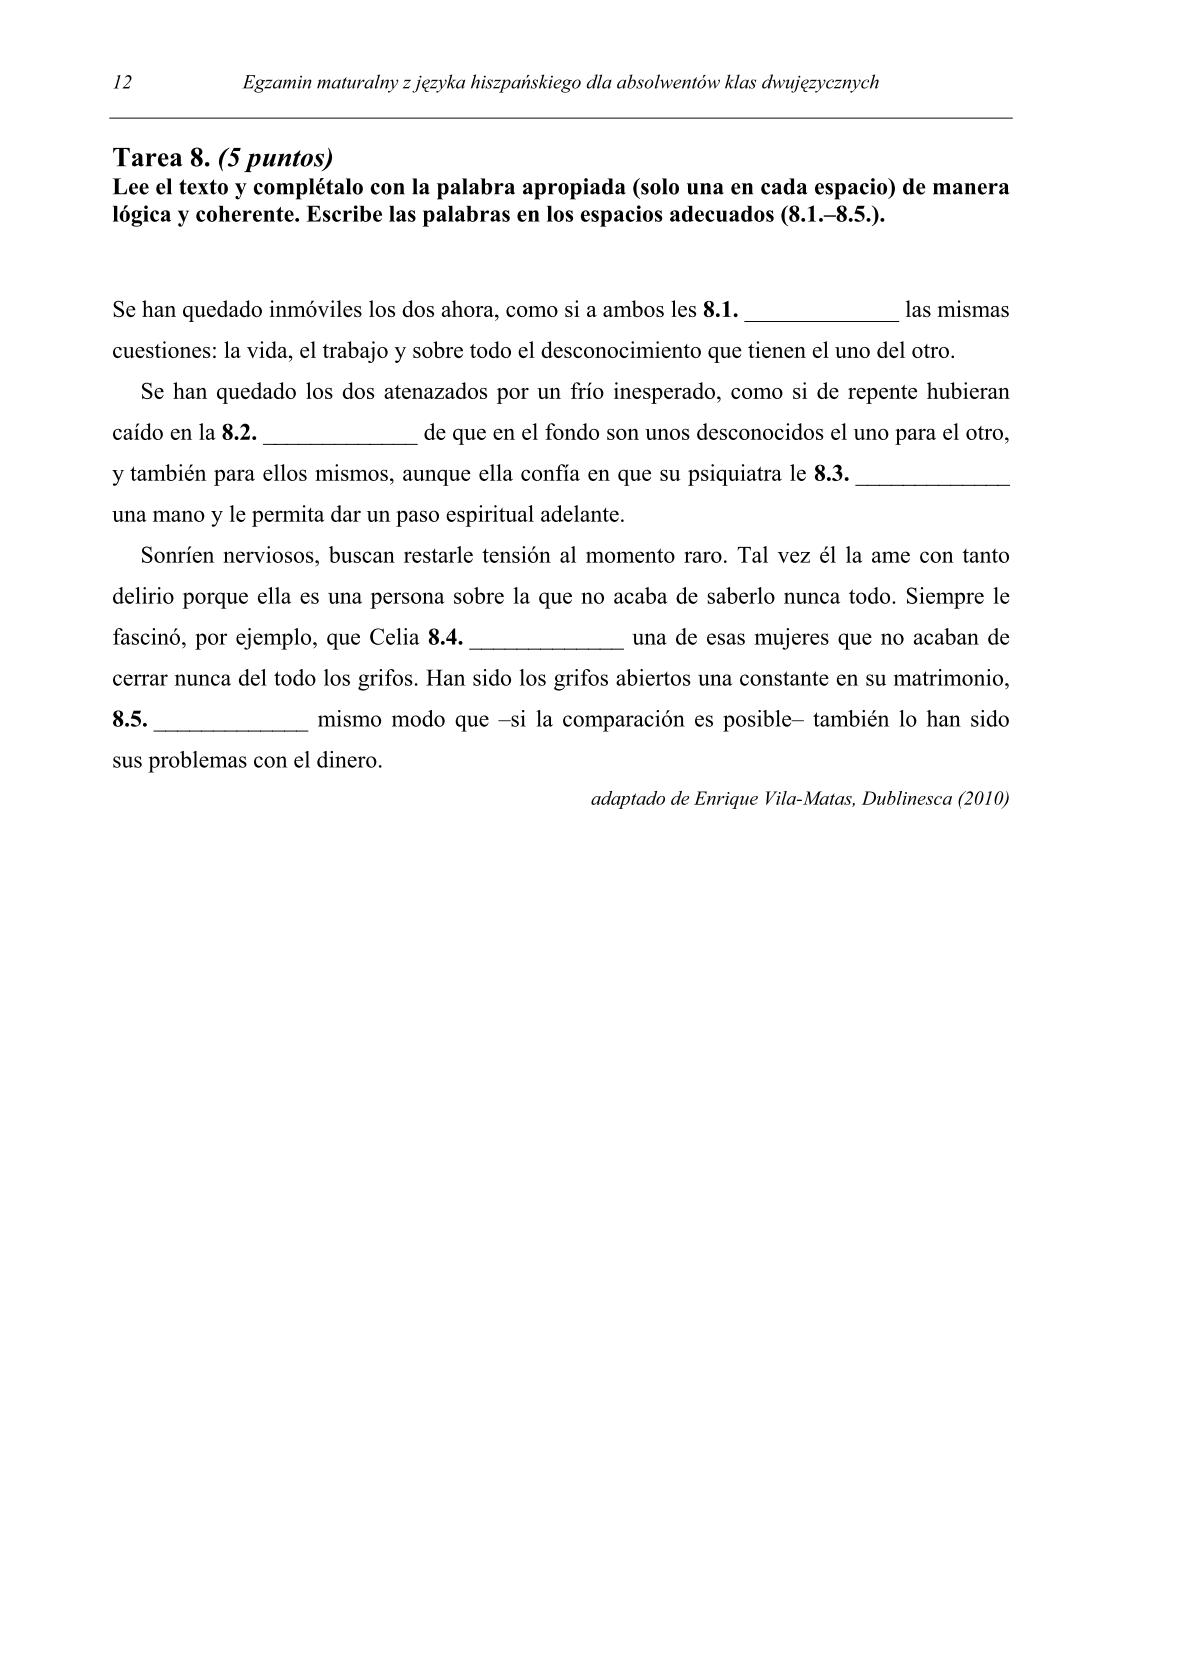 pytania-hiszpanski-dla-absolwentow-klas-dwujezycznych-matura-2014-str.12